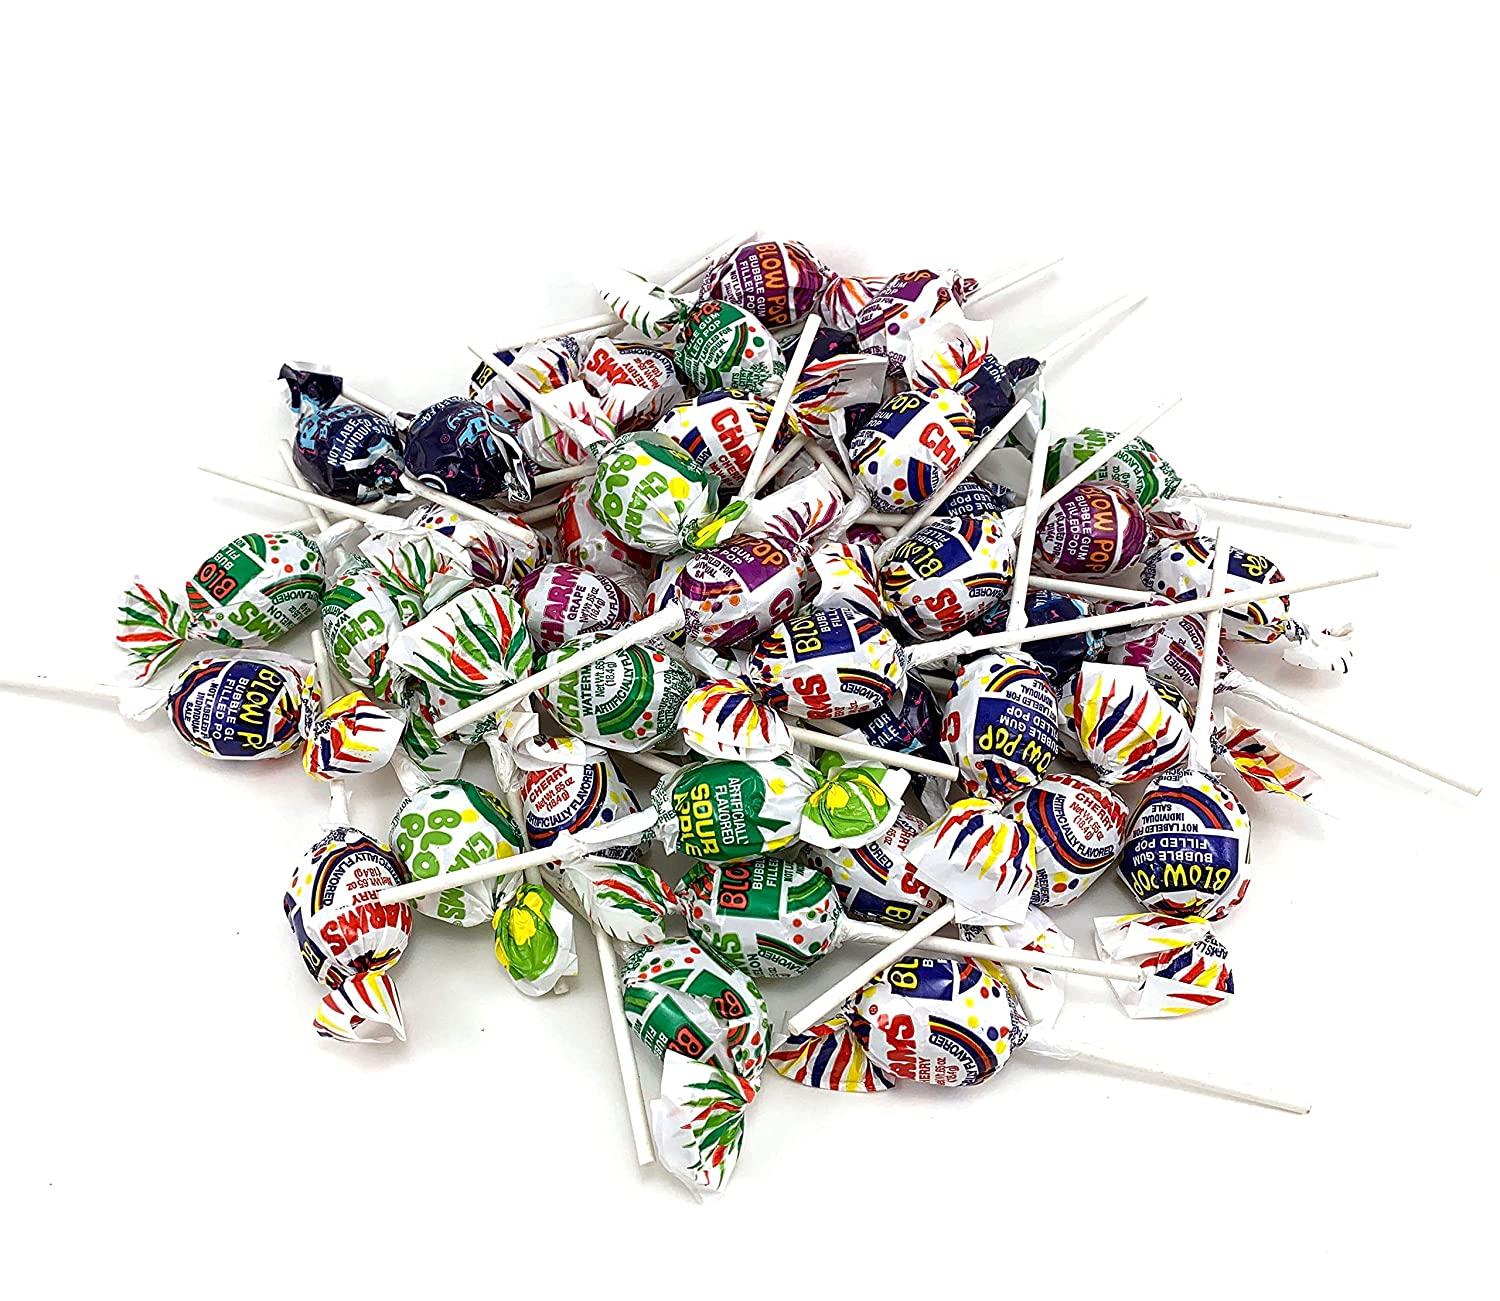 Charms Assorted Fruit Flavor Blow Pop Lollipops - 3 LB Bulk Bag - All City  Candy